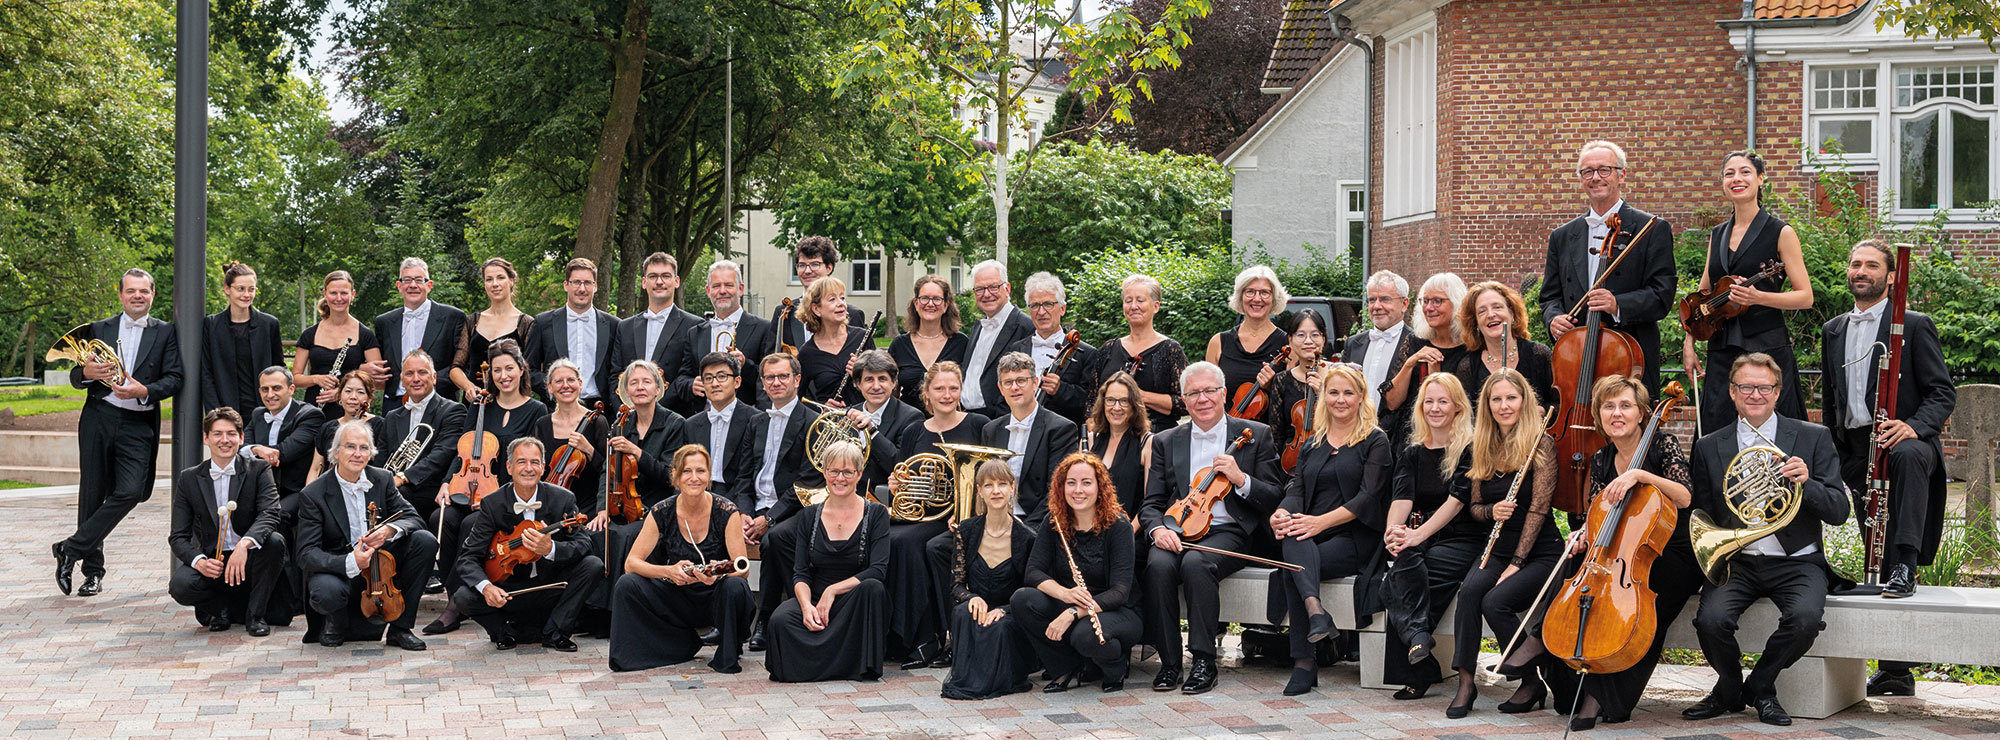 Das Schleswig-Holsteinische Sinfonieorchester, draußen, in schwarzer Kleidung, mit den Instrumenten